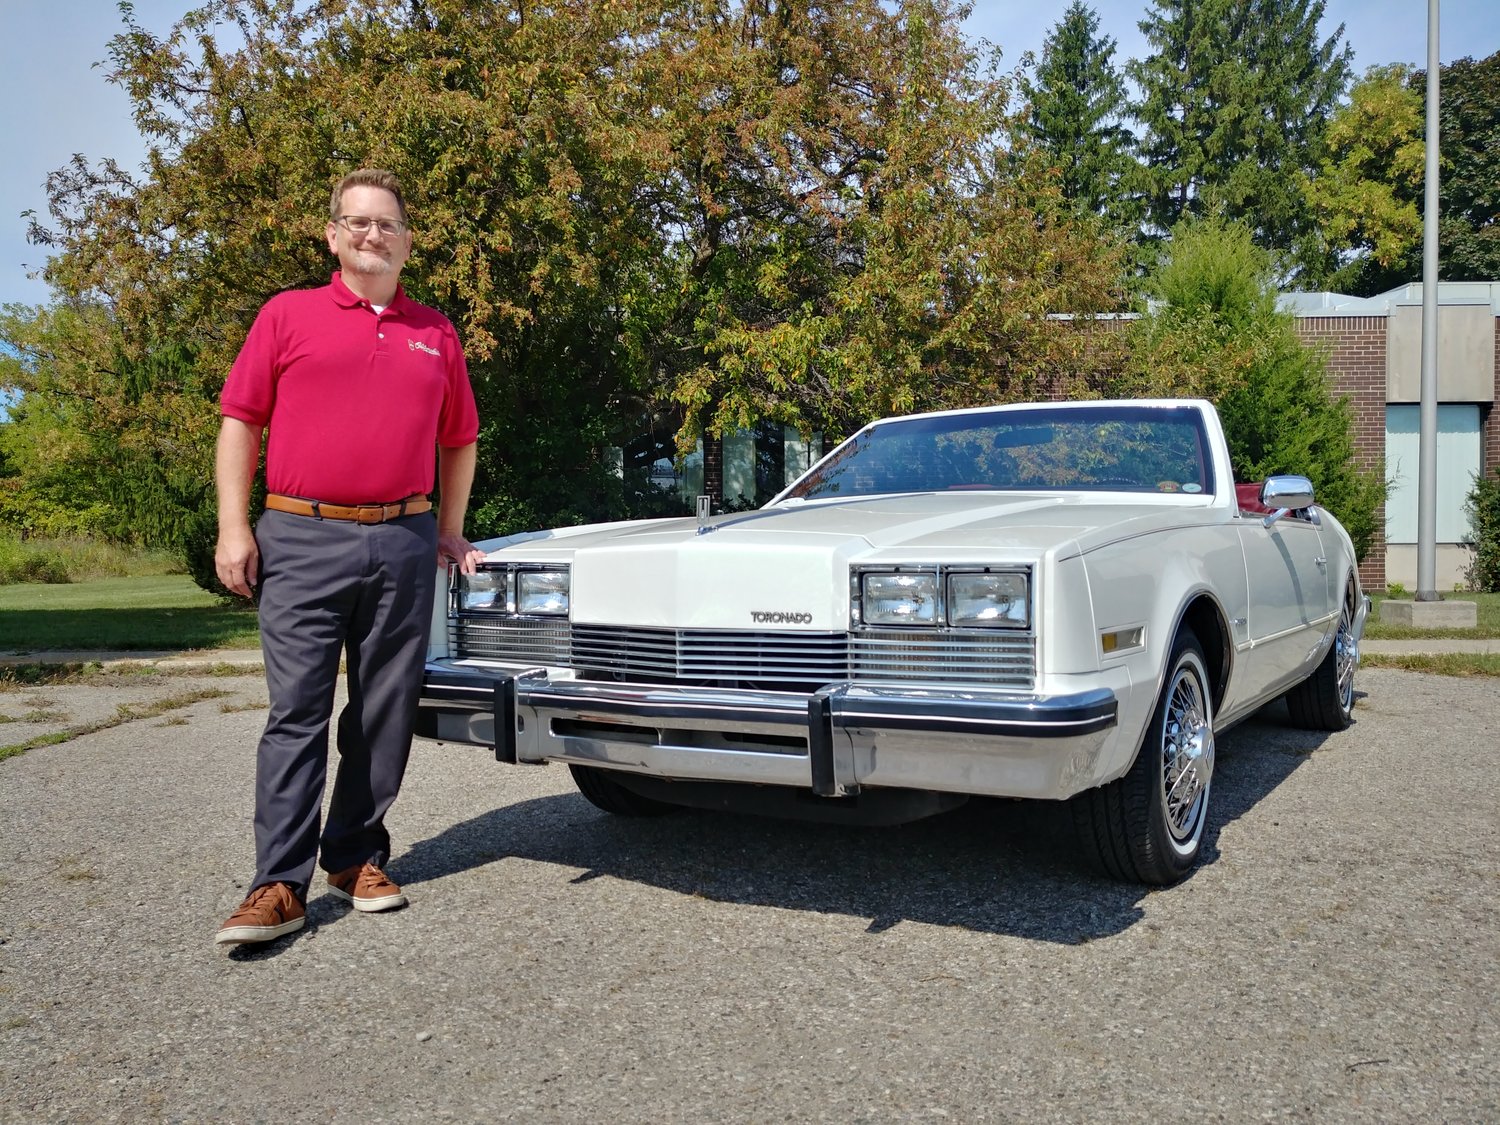 Evan Hope is a proud owner of a 1982 Oldsmobile Toronado convertible.